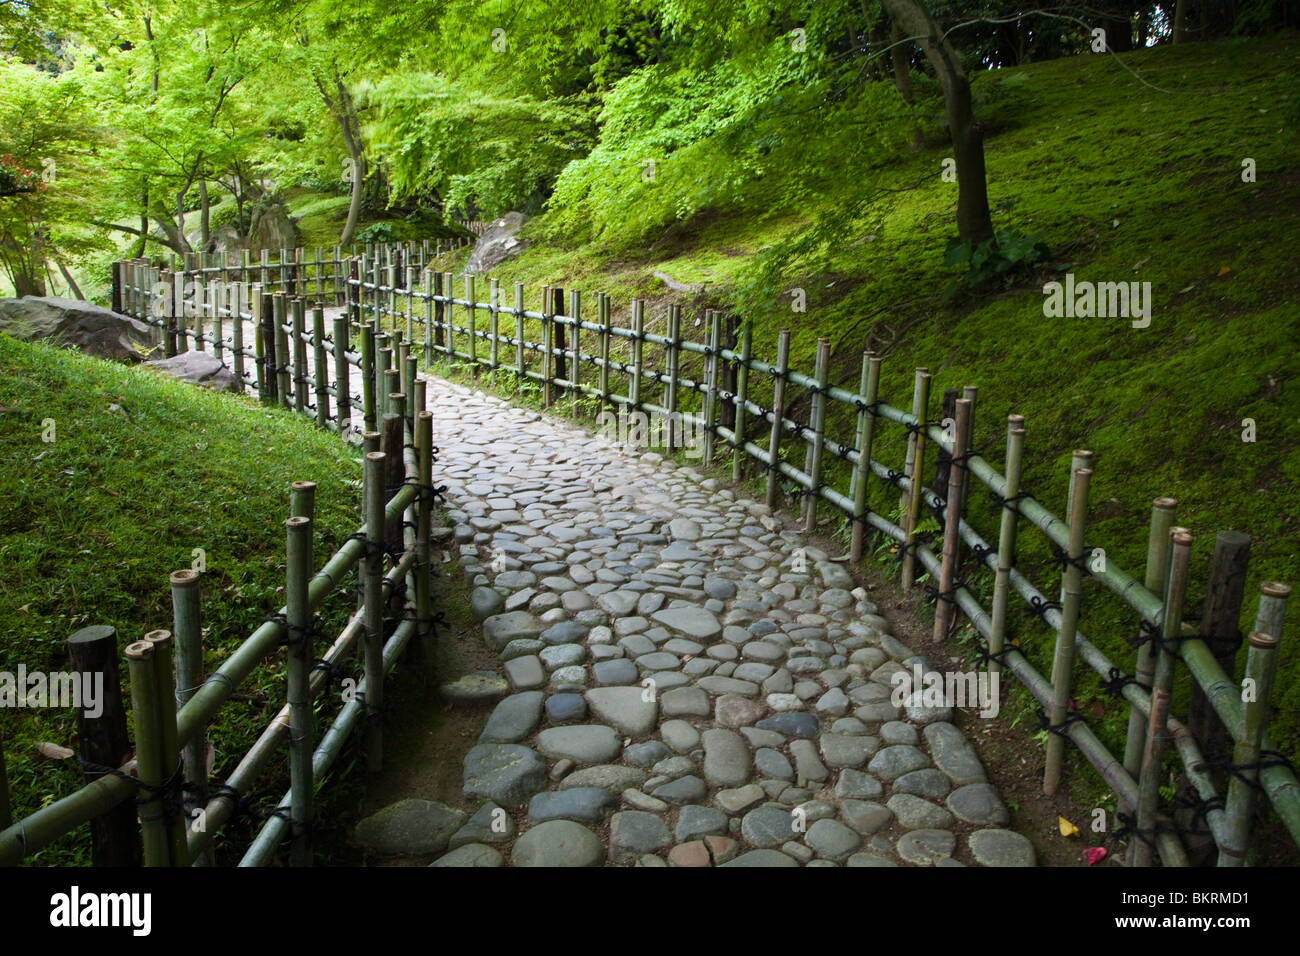 Ritsurin est un jardin paysager à Takamatsu, considéré comme l'un des plus beaux jardins promenade au Japon Banque D'Images